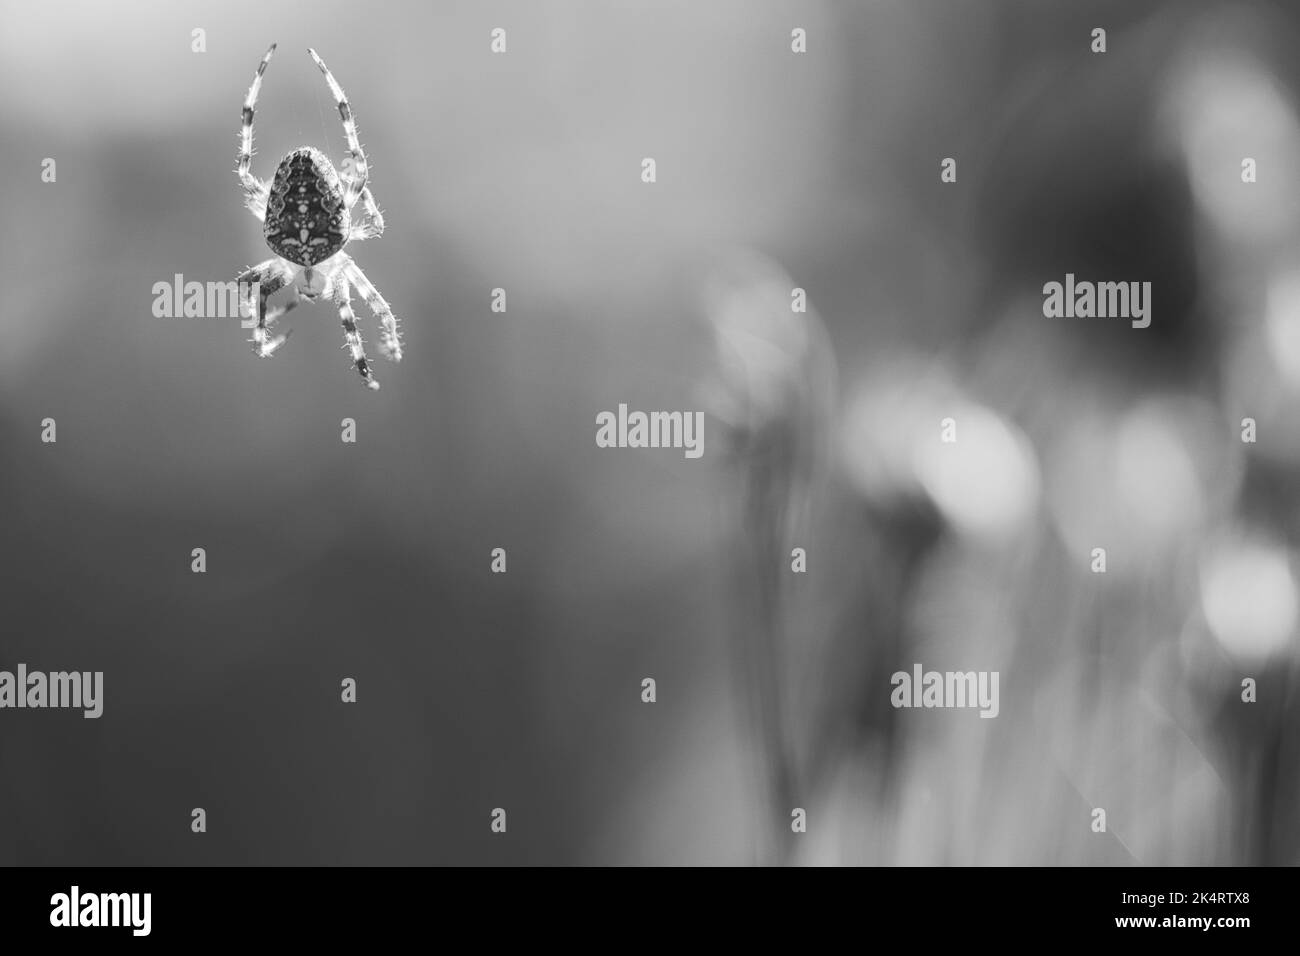 Kreuzspinne in schwarz-weiß geschossen, kriechend auf einem Spinnfaden. Unscharfer Hintergrund. Ein nützlicher Jäger unter Insekten. Arachnid. Tierfoto aus dem Stockfoto